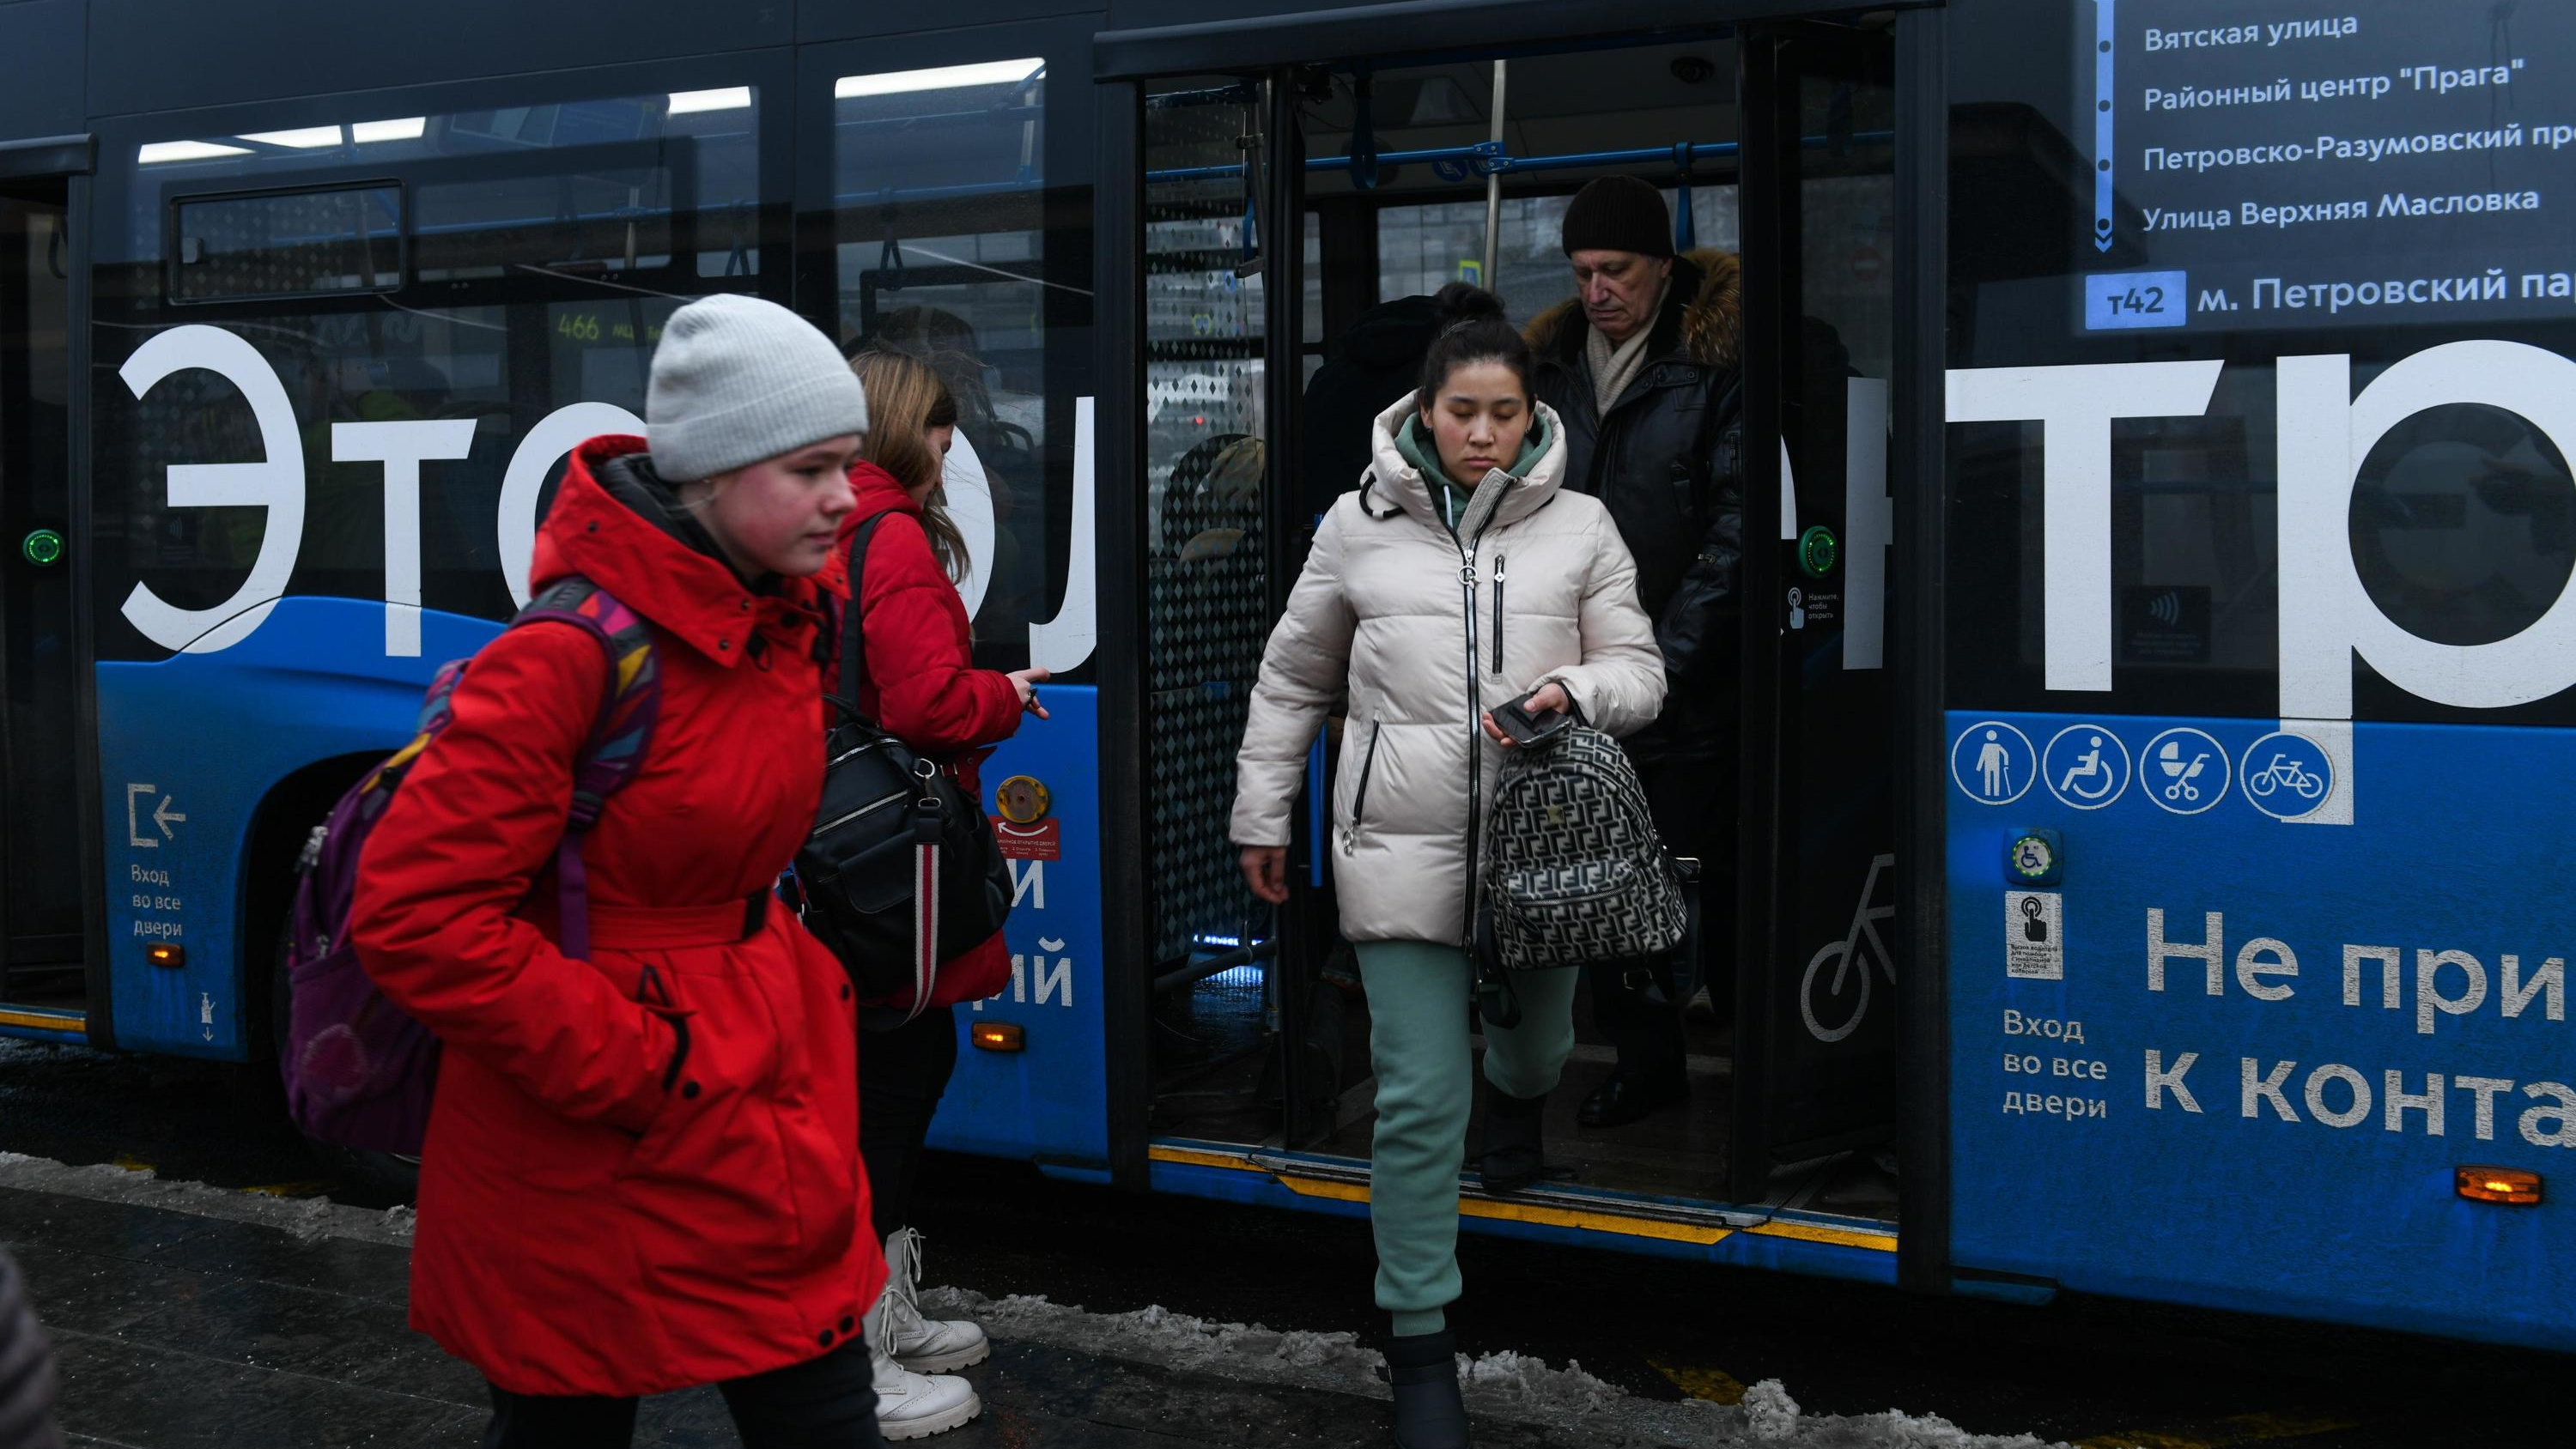 «Не нравятся категорически». Москвичи высказались о планах властей по полной замене автобусов на электробусы к 2030 году